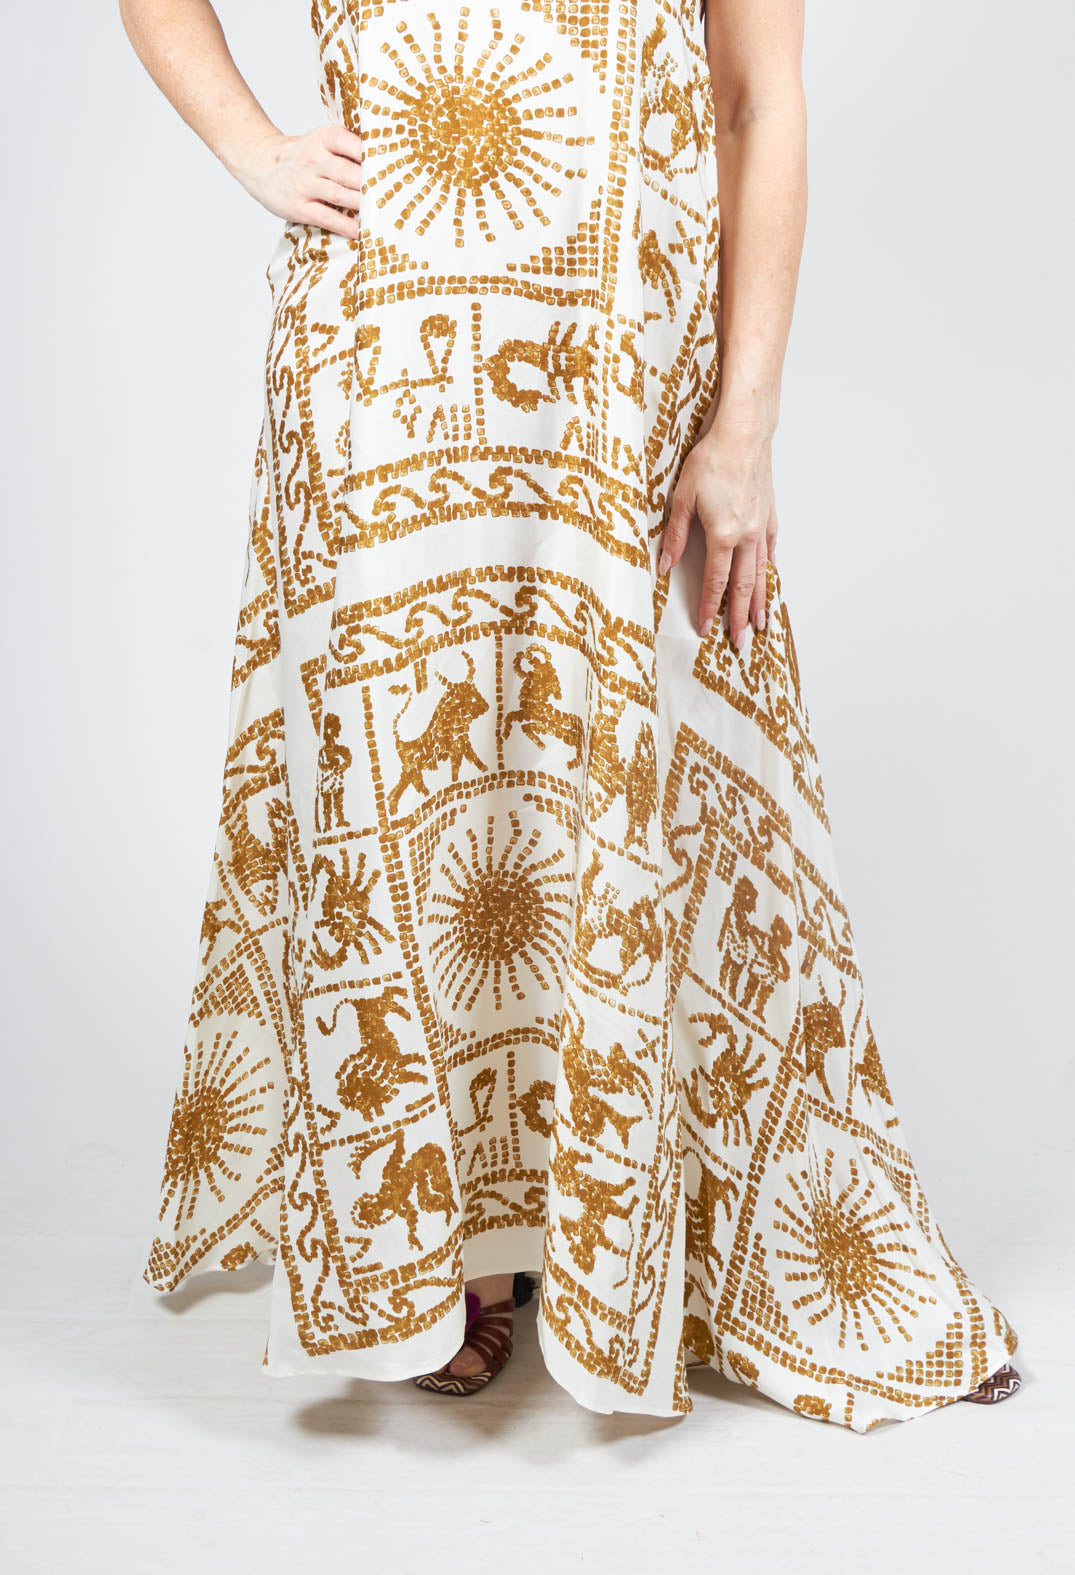 Beatrice B skinny strap dress in zodiac print